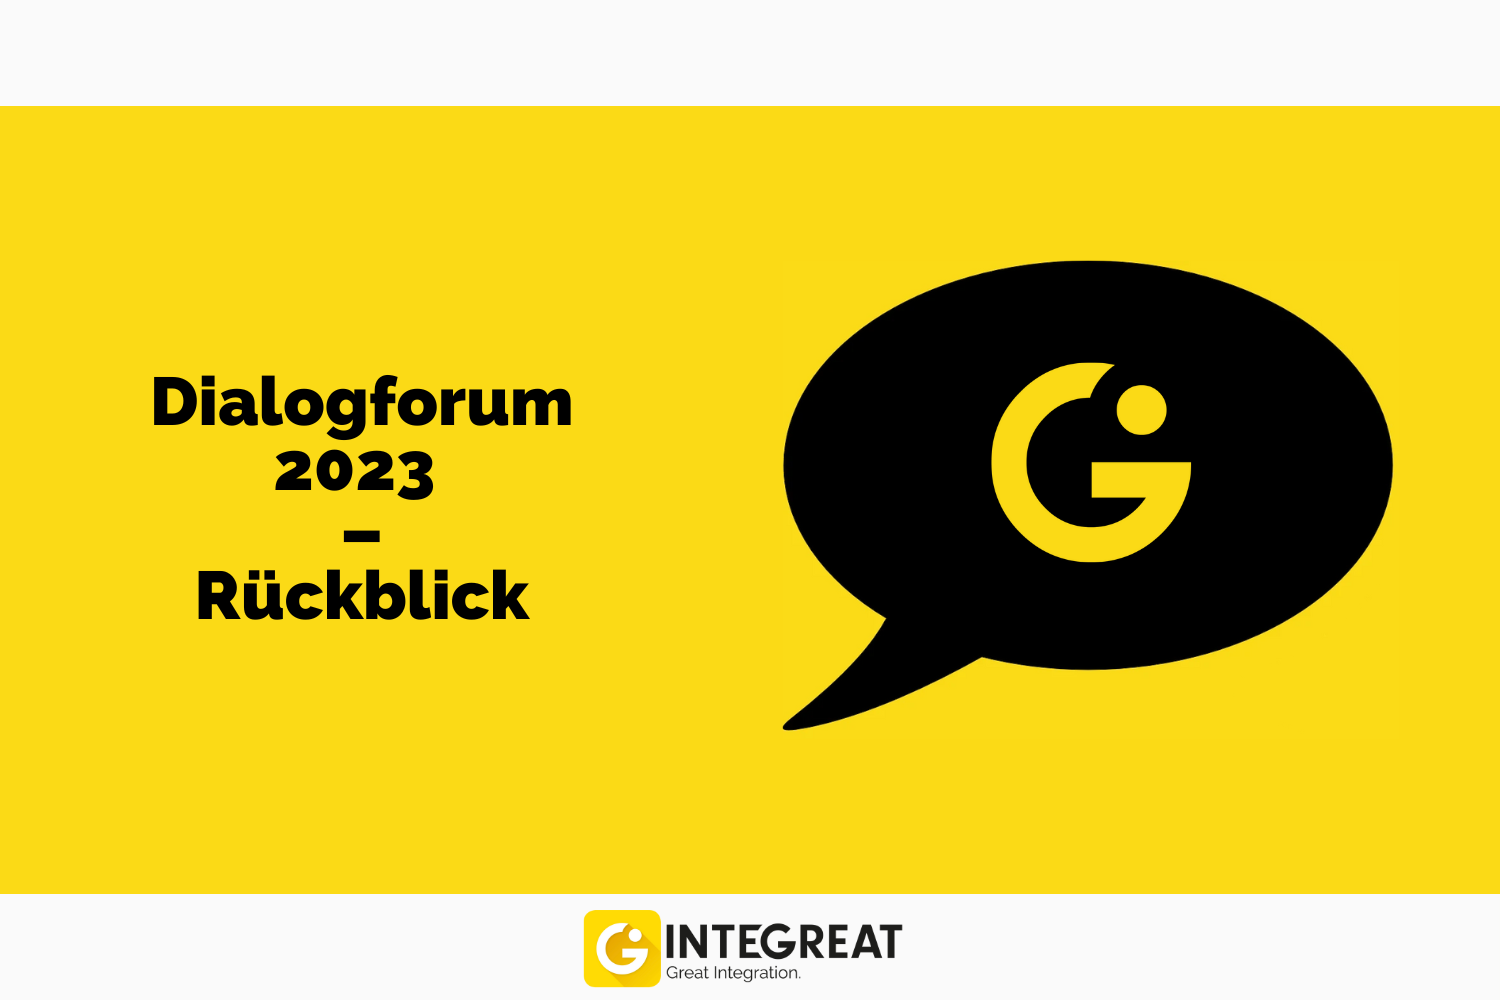 Dialogforum 2023 – Symbolbild